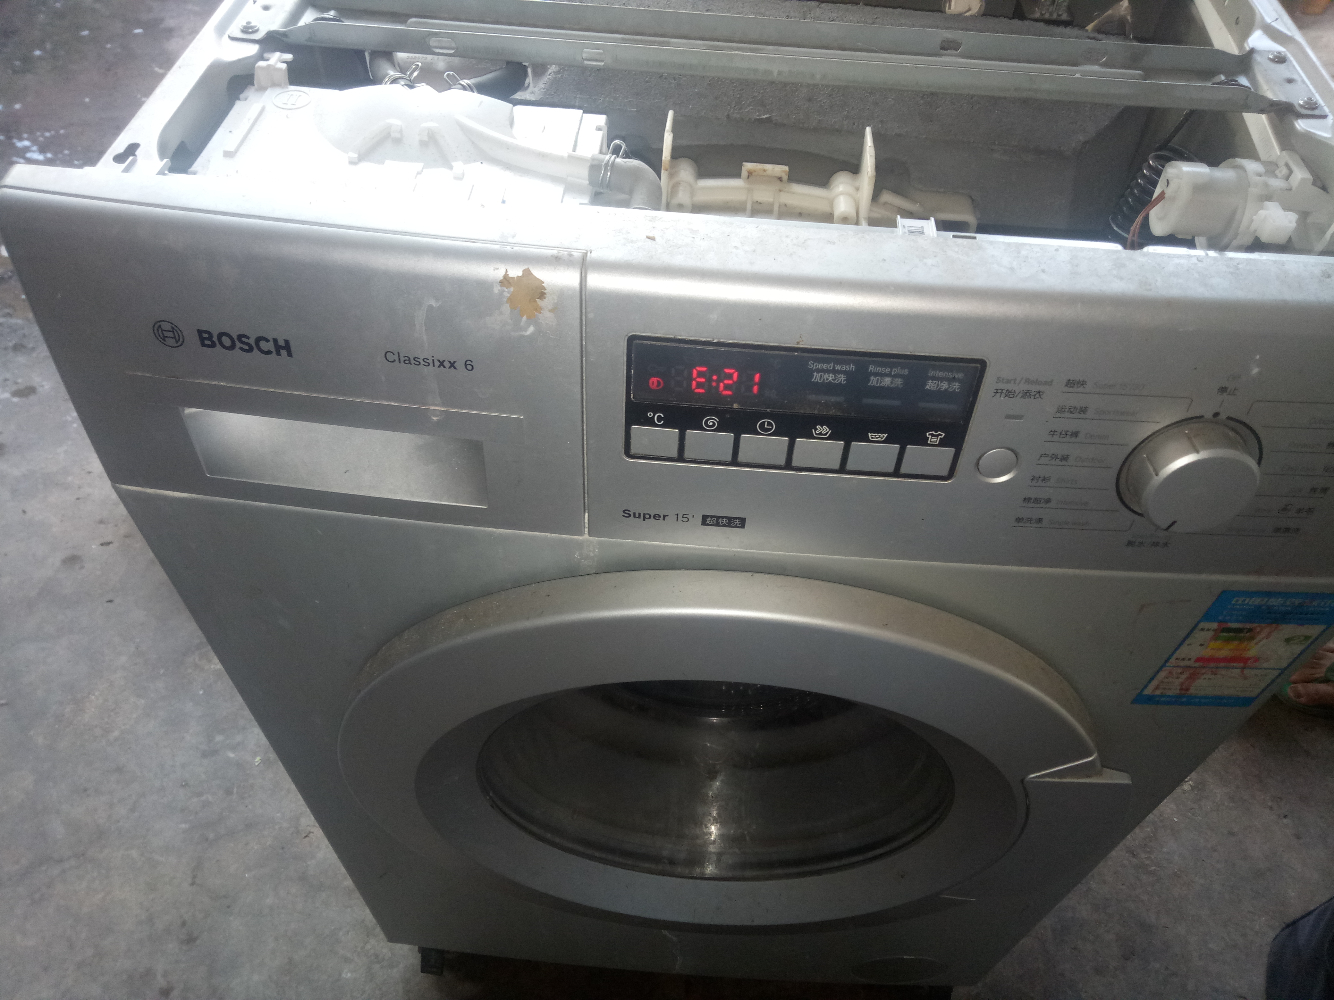 bosch博世滚筒洗衣机通电显示e21